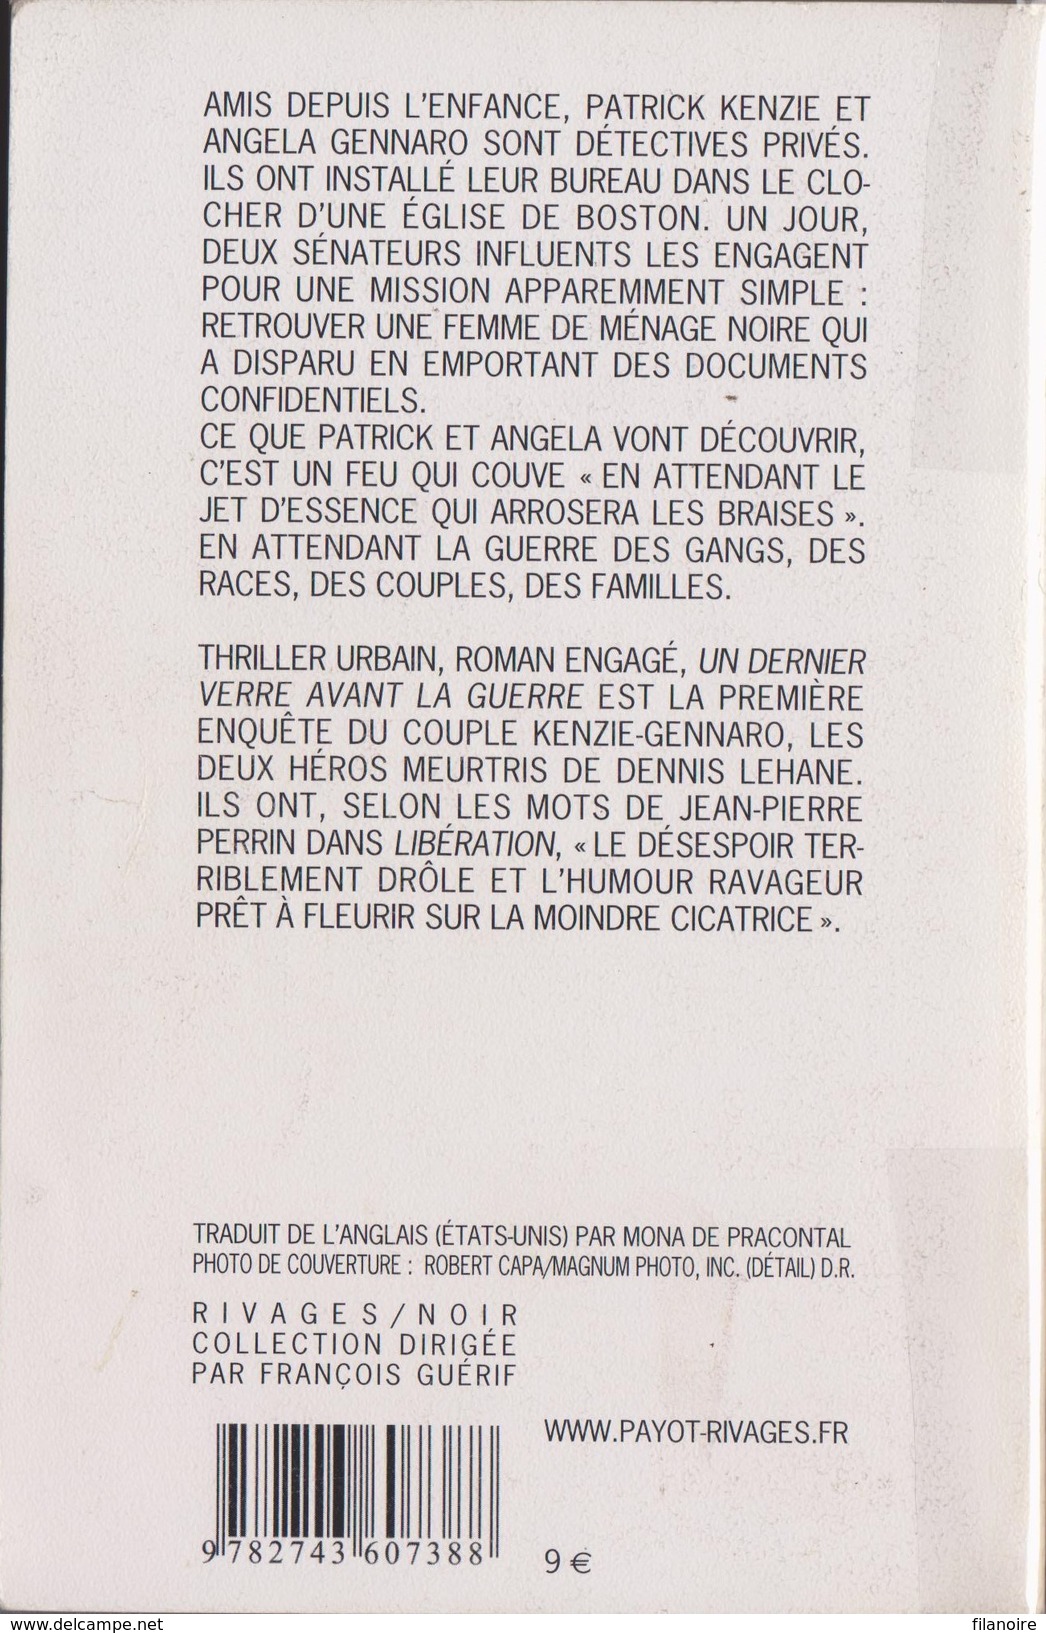 Dennis LEHANE Un Dernier Verre Avant La Guerre Rivages Noir N°380 (2005) - Rivage Noir